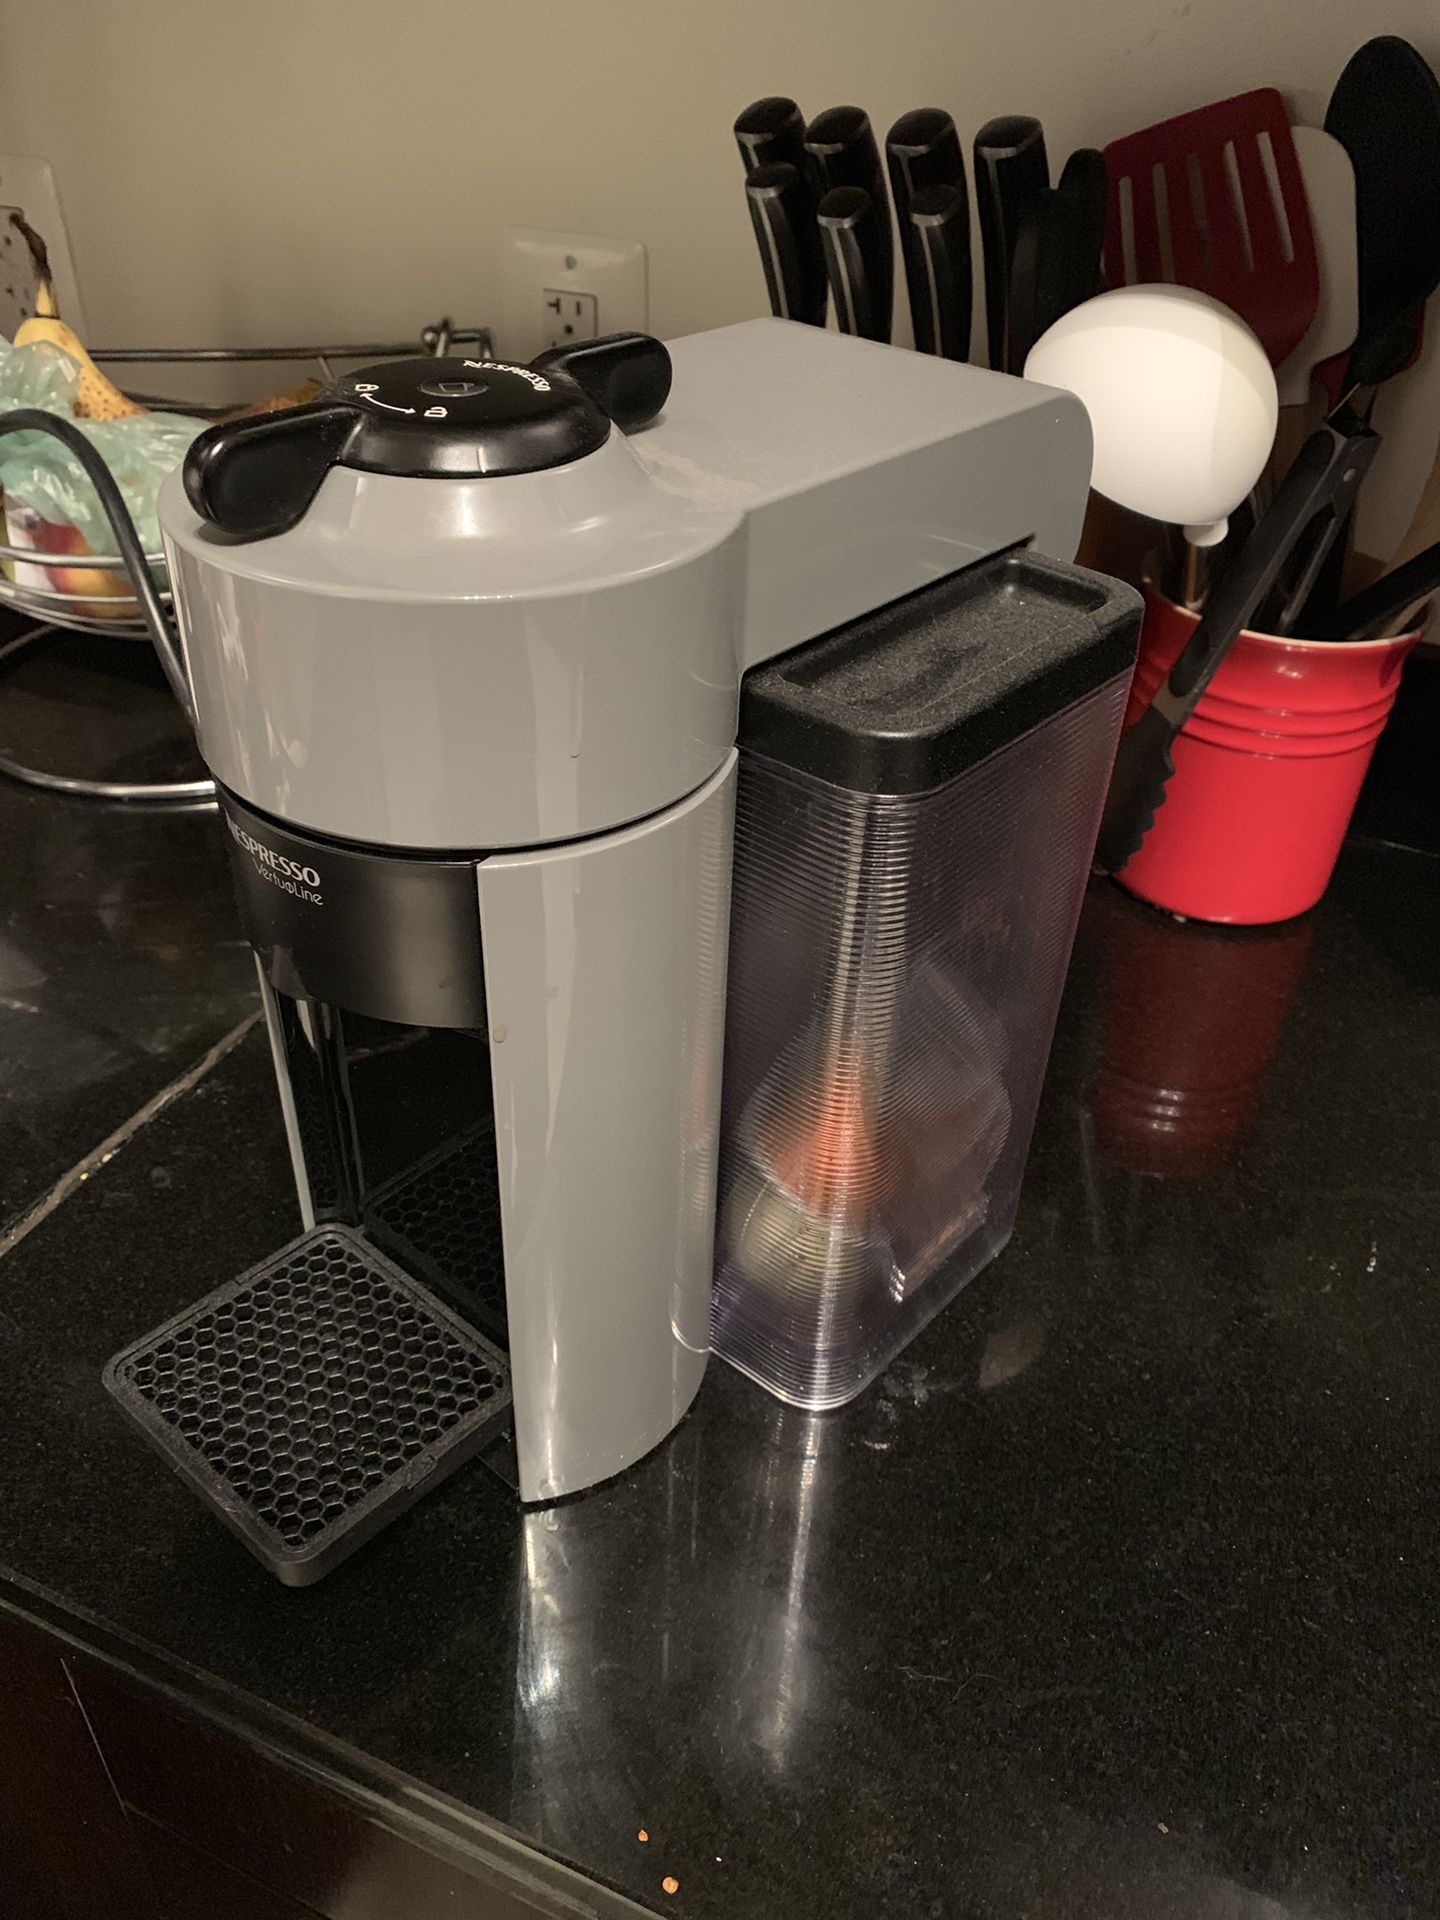 Nescafé coffee maker